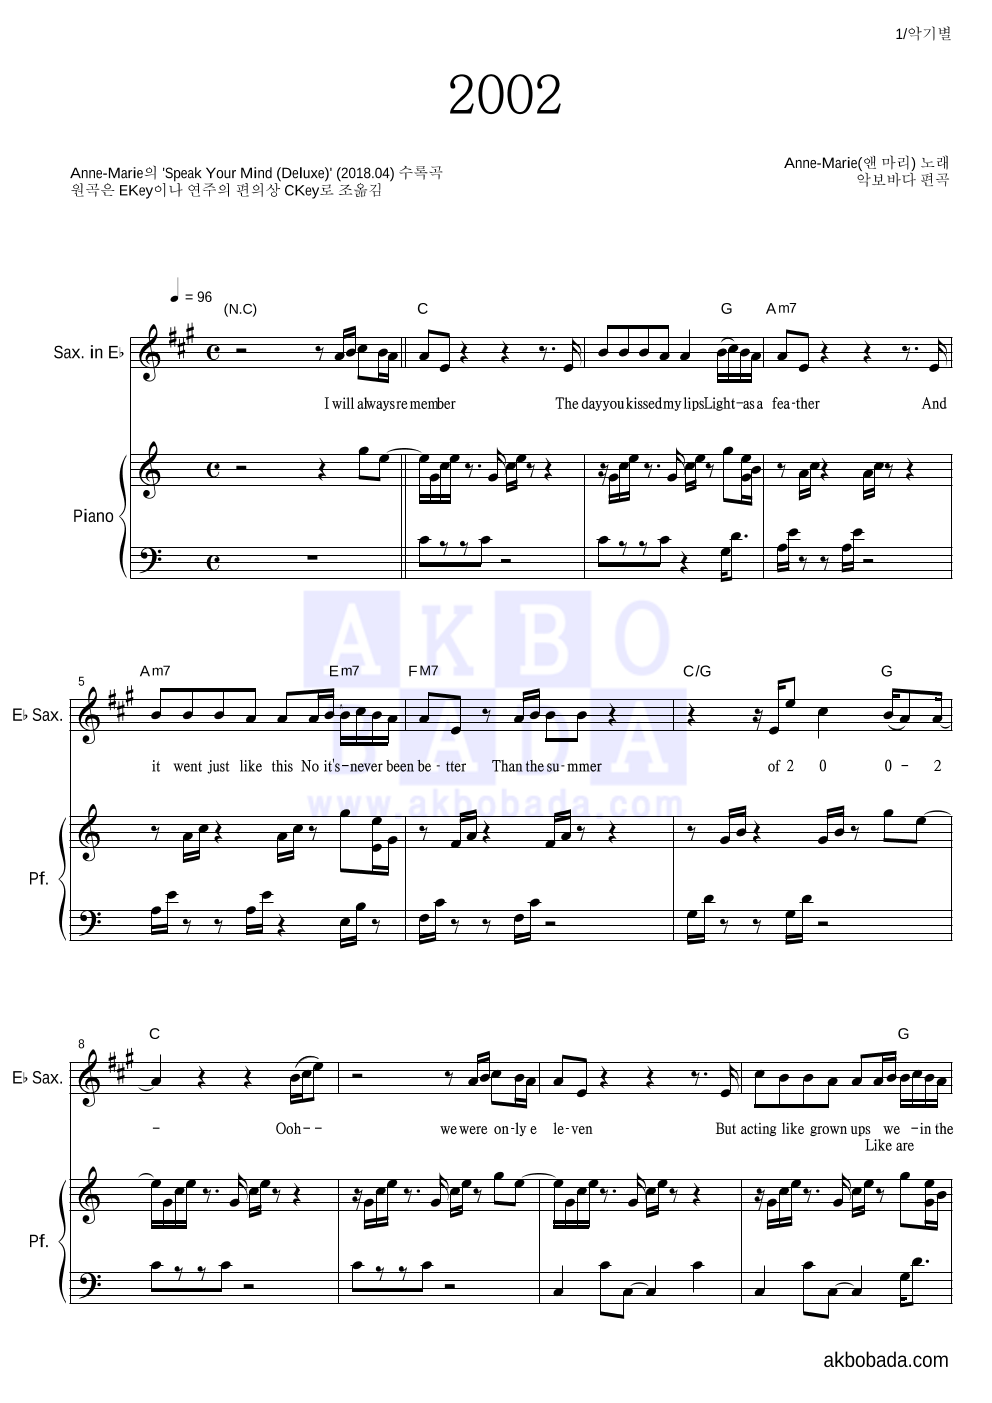 Anne-Marie - 2002 Eb색소폰&피아노 악보 